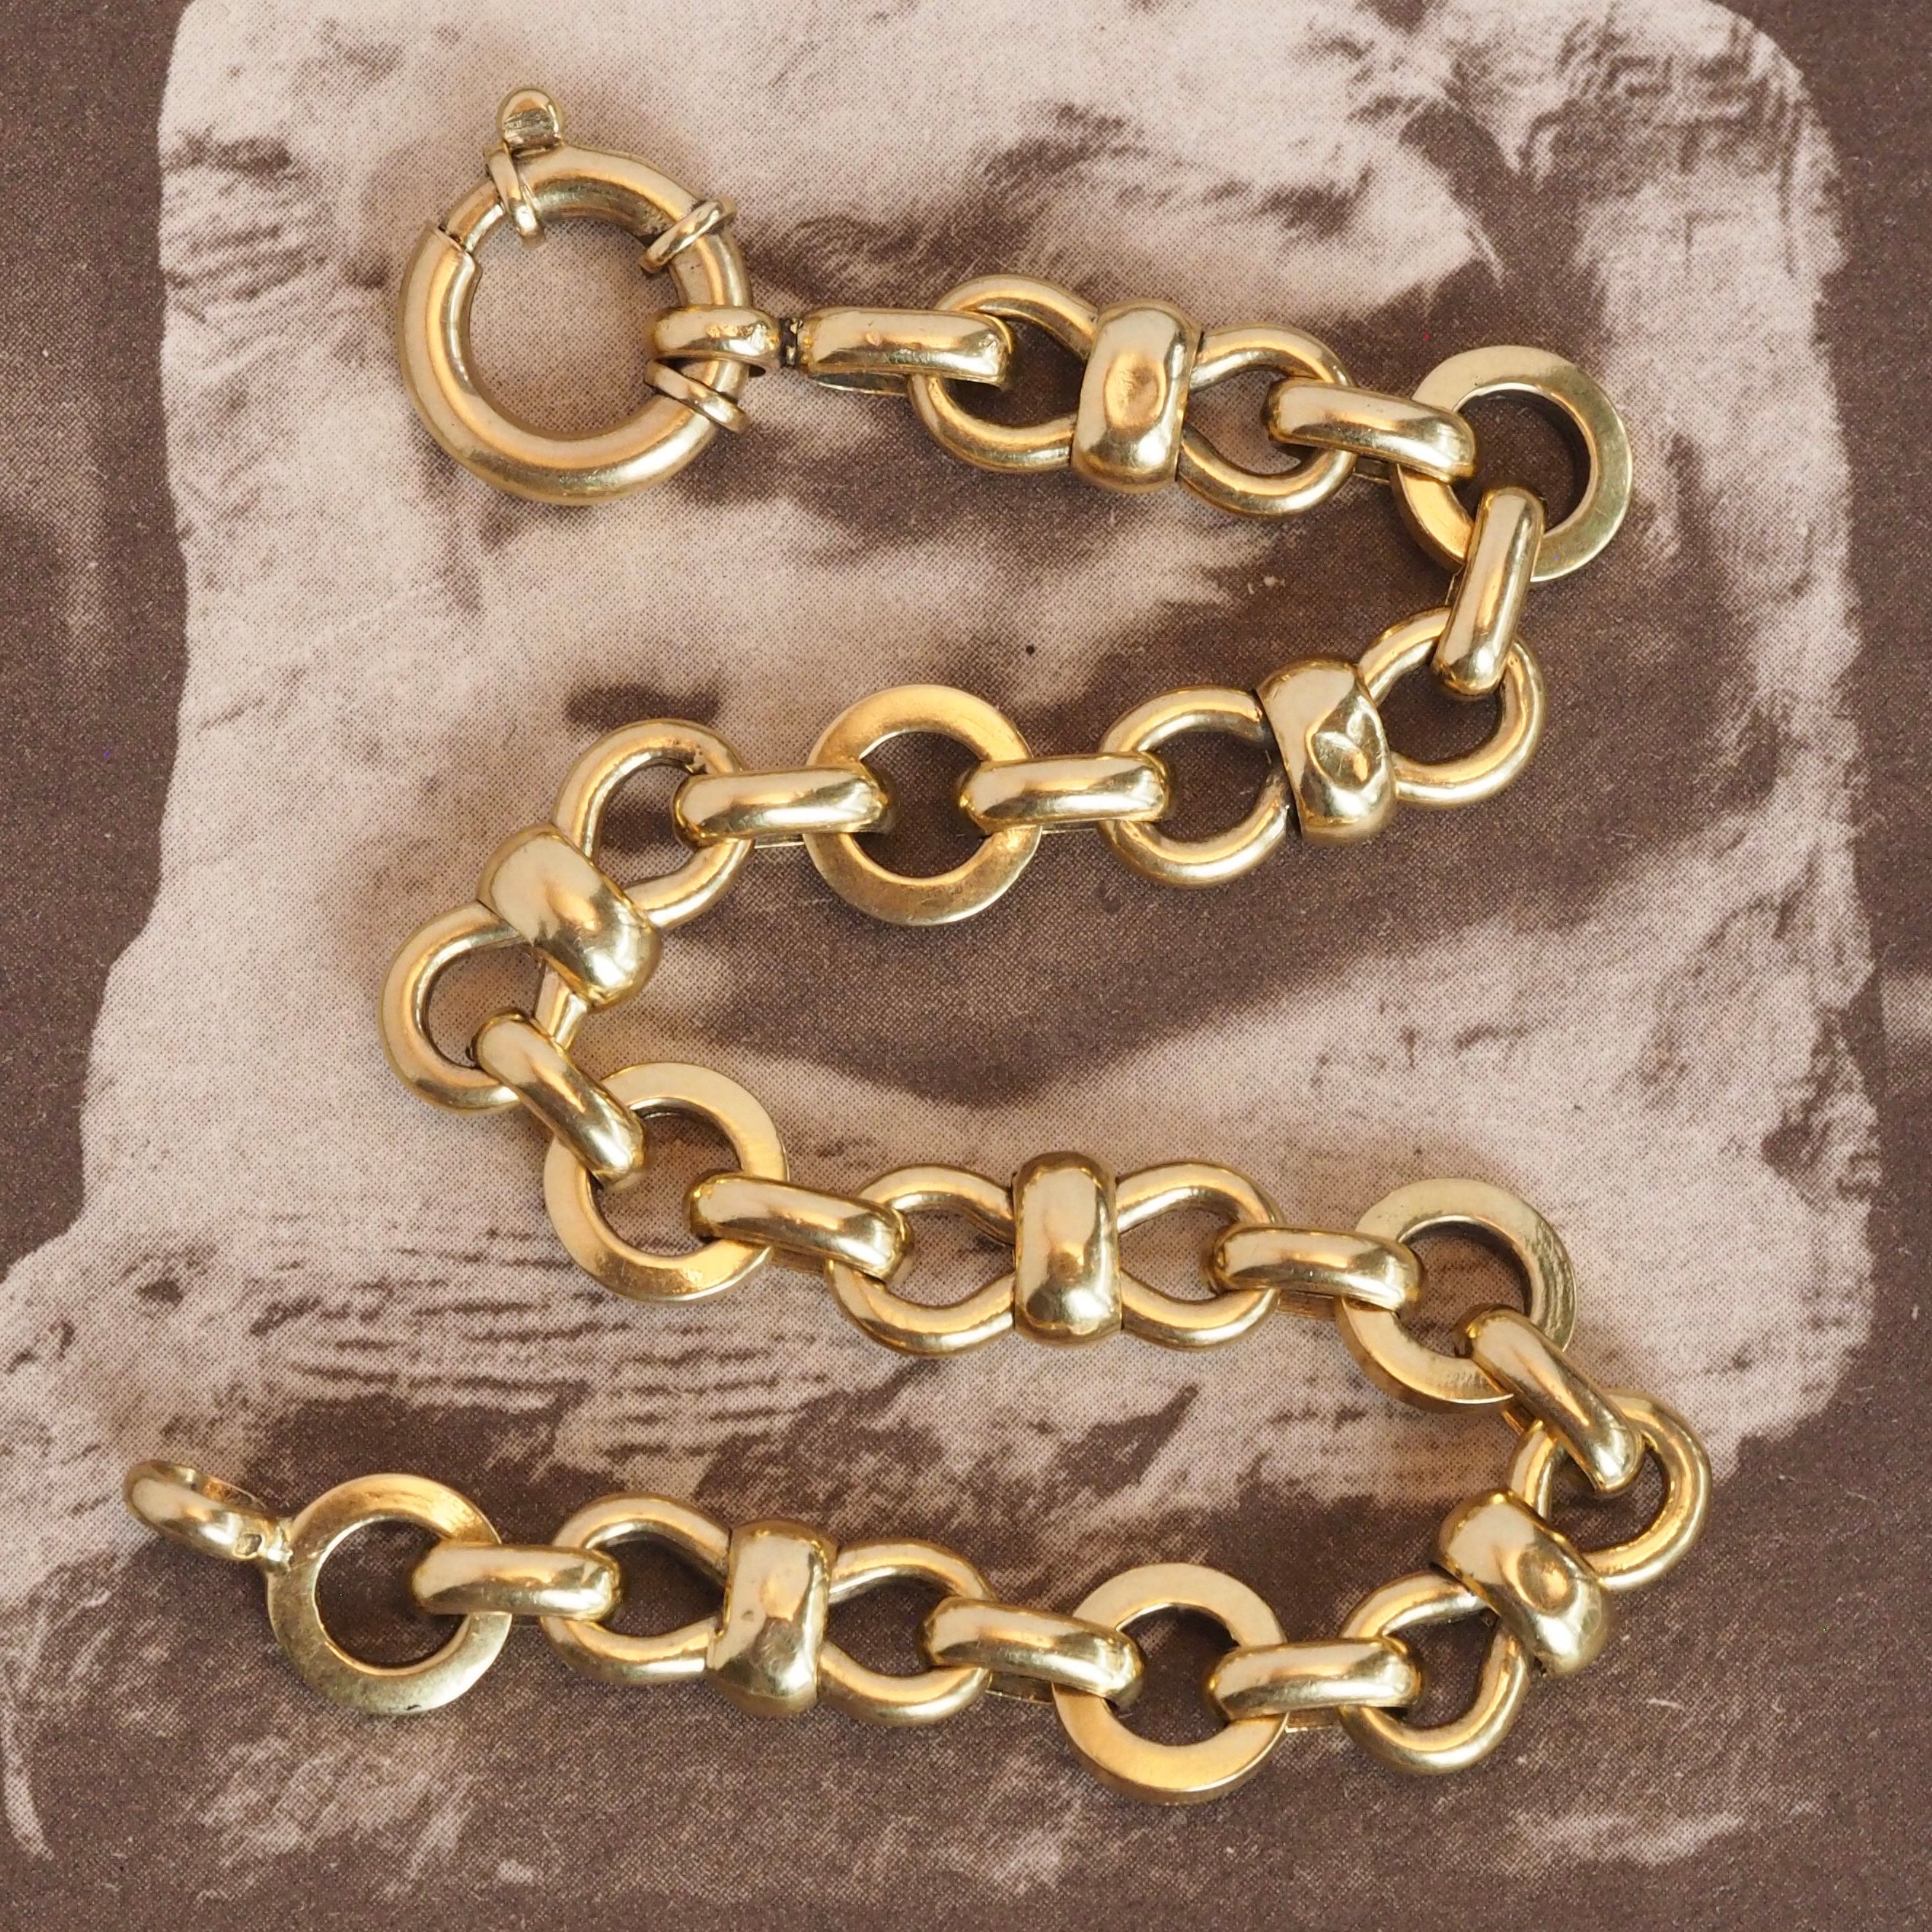 Vintage Portuguese 19k Gold Bow Tie Link Chain Bracelet